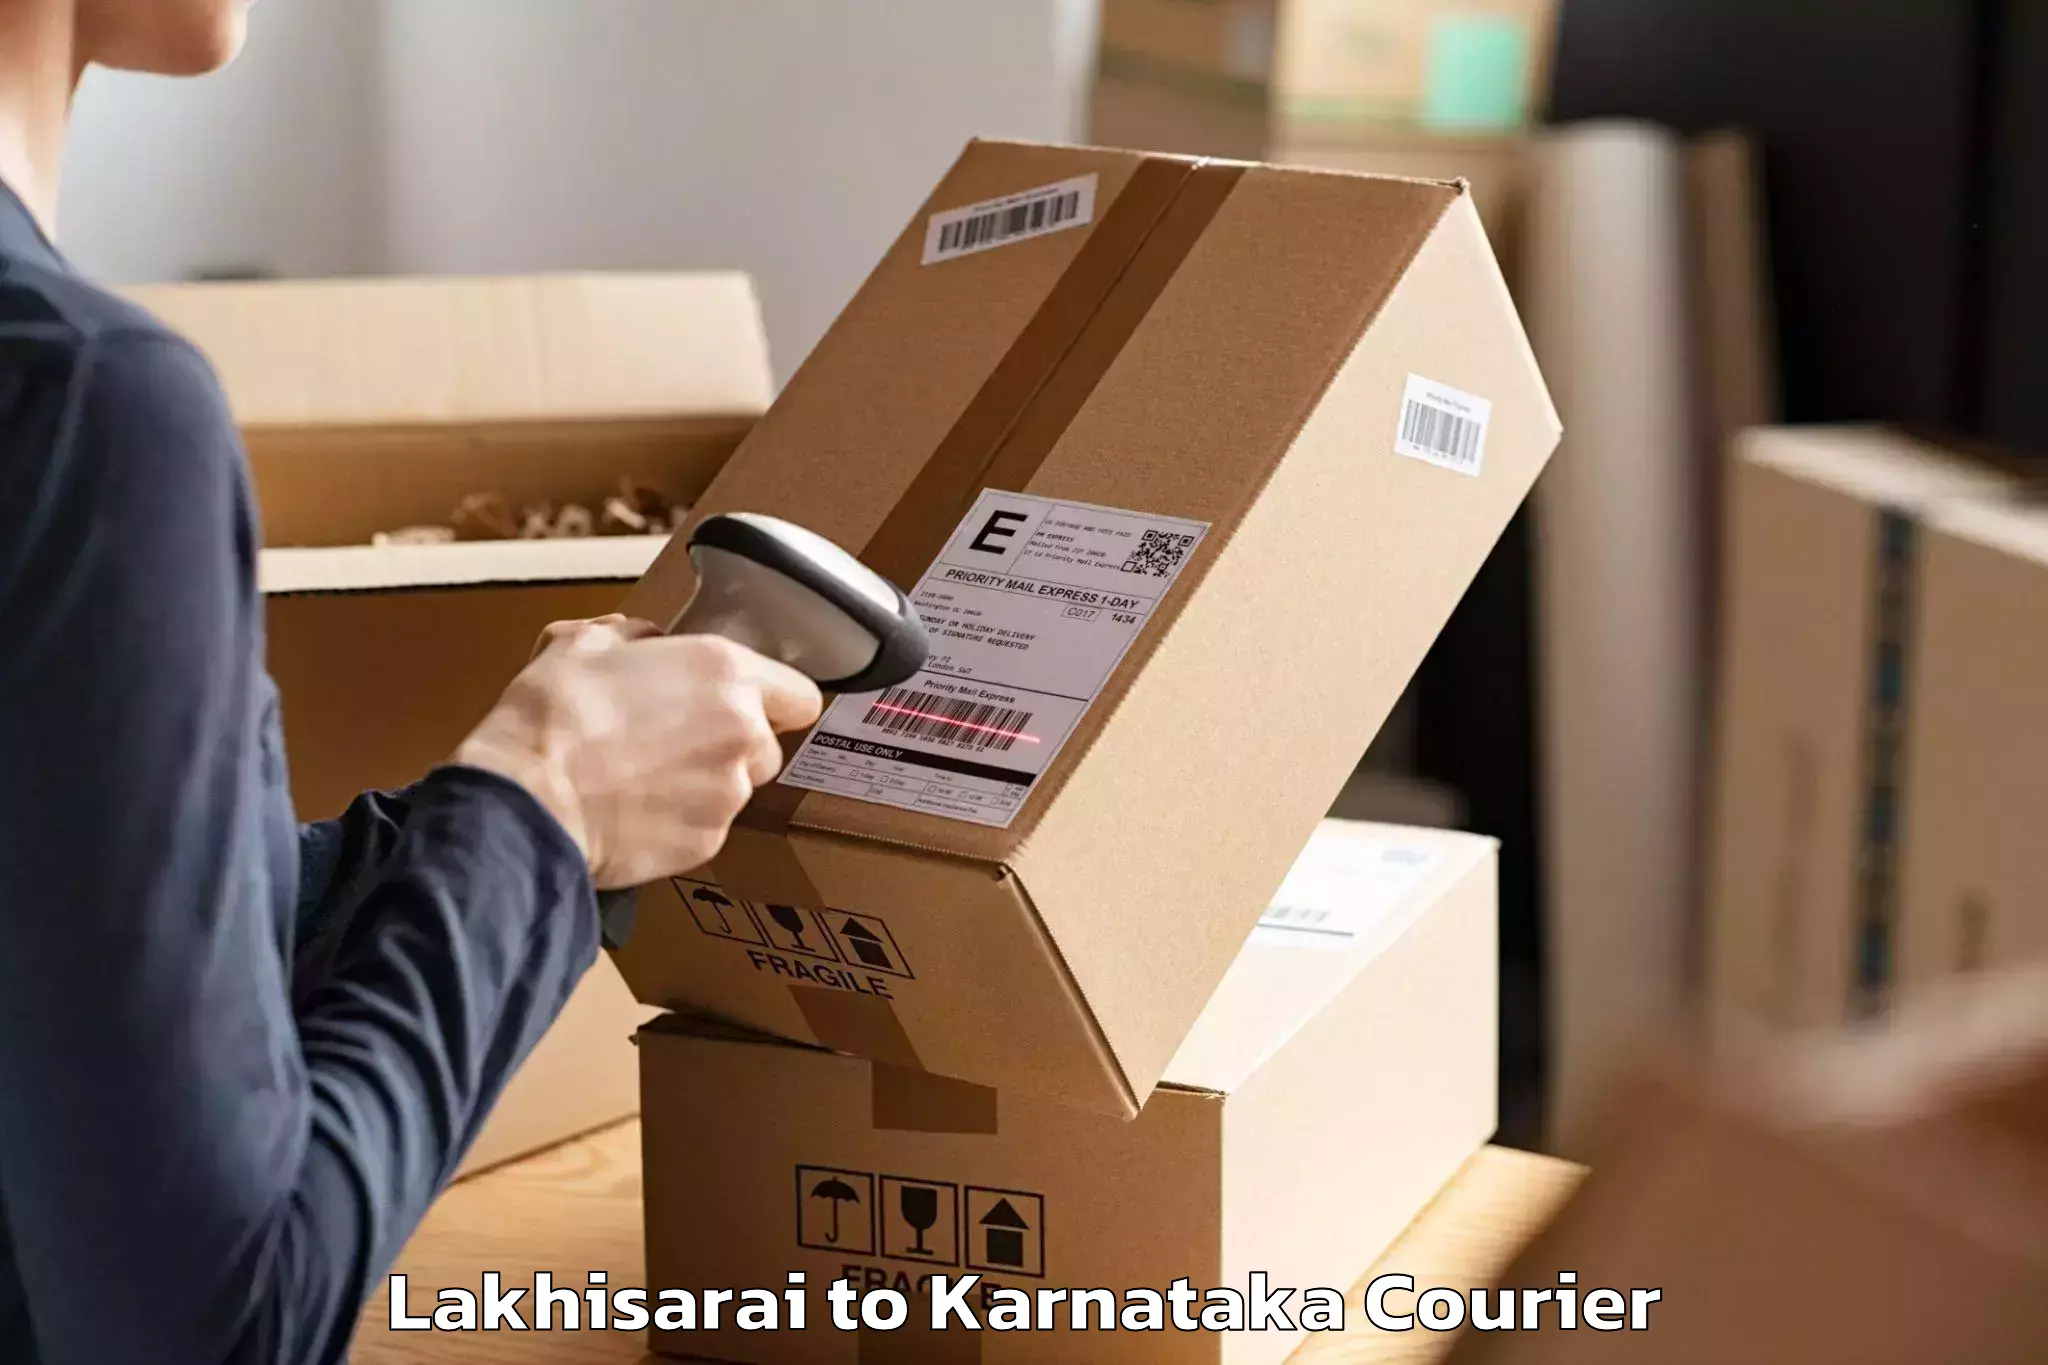 Furniture moving specialists Lakhisarai to Shanivarasanthe